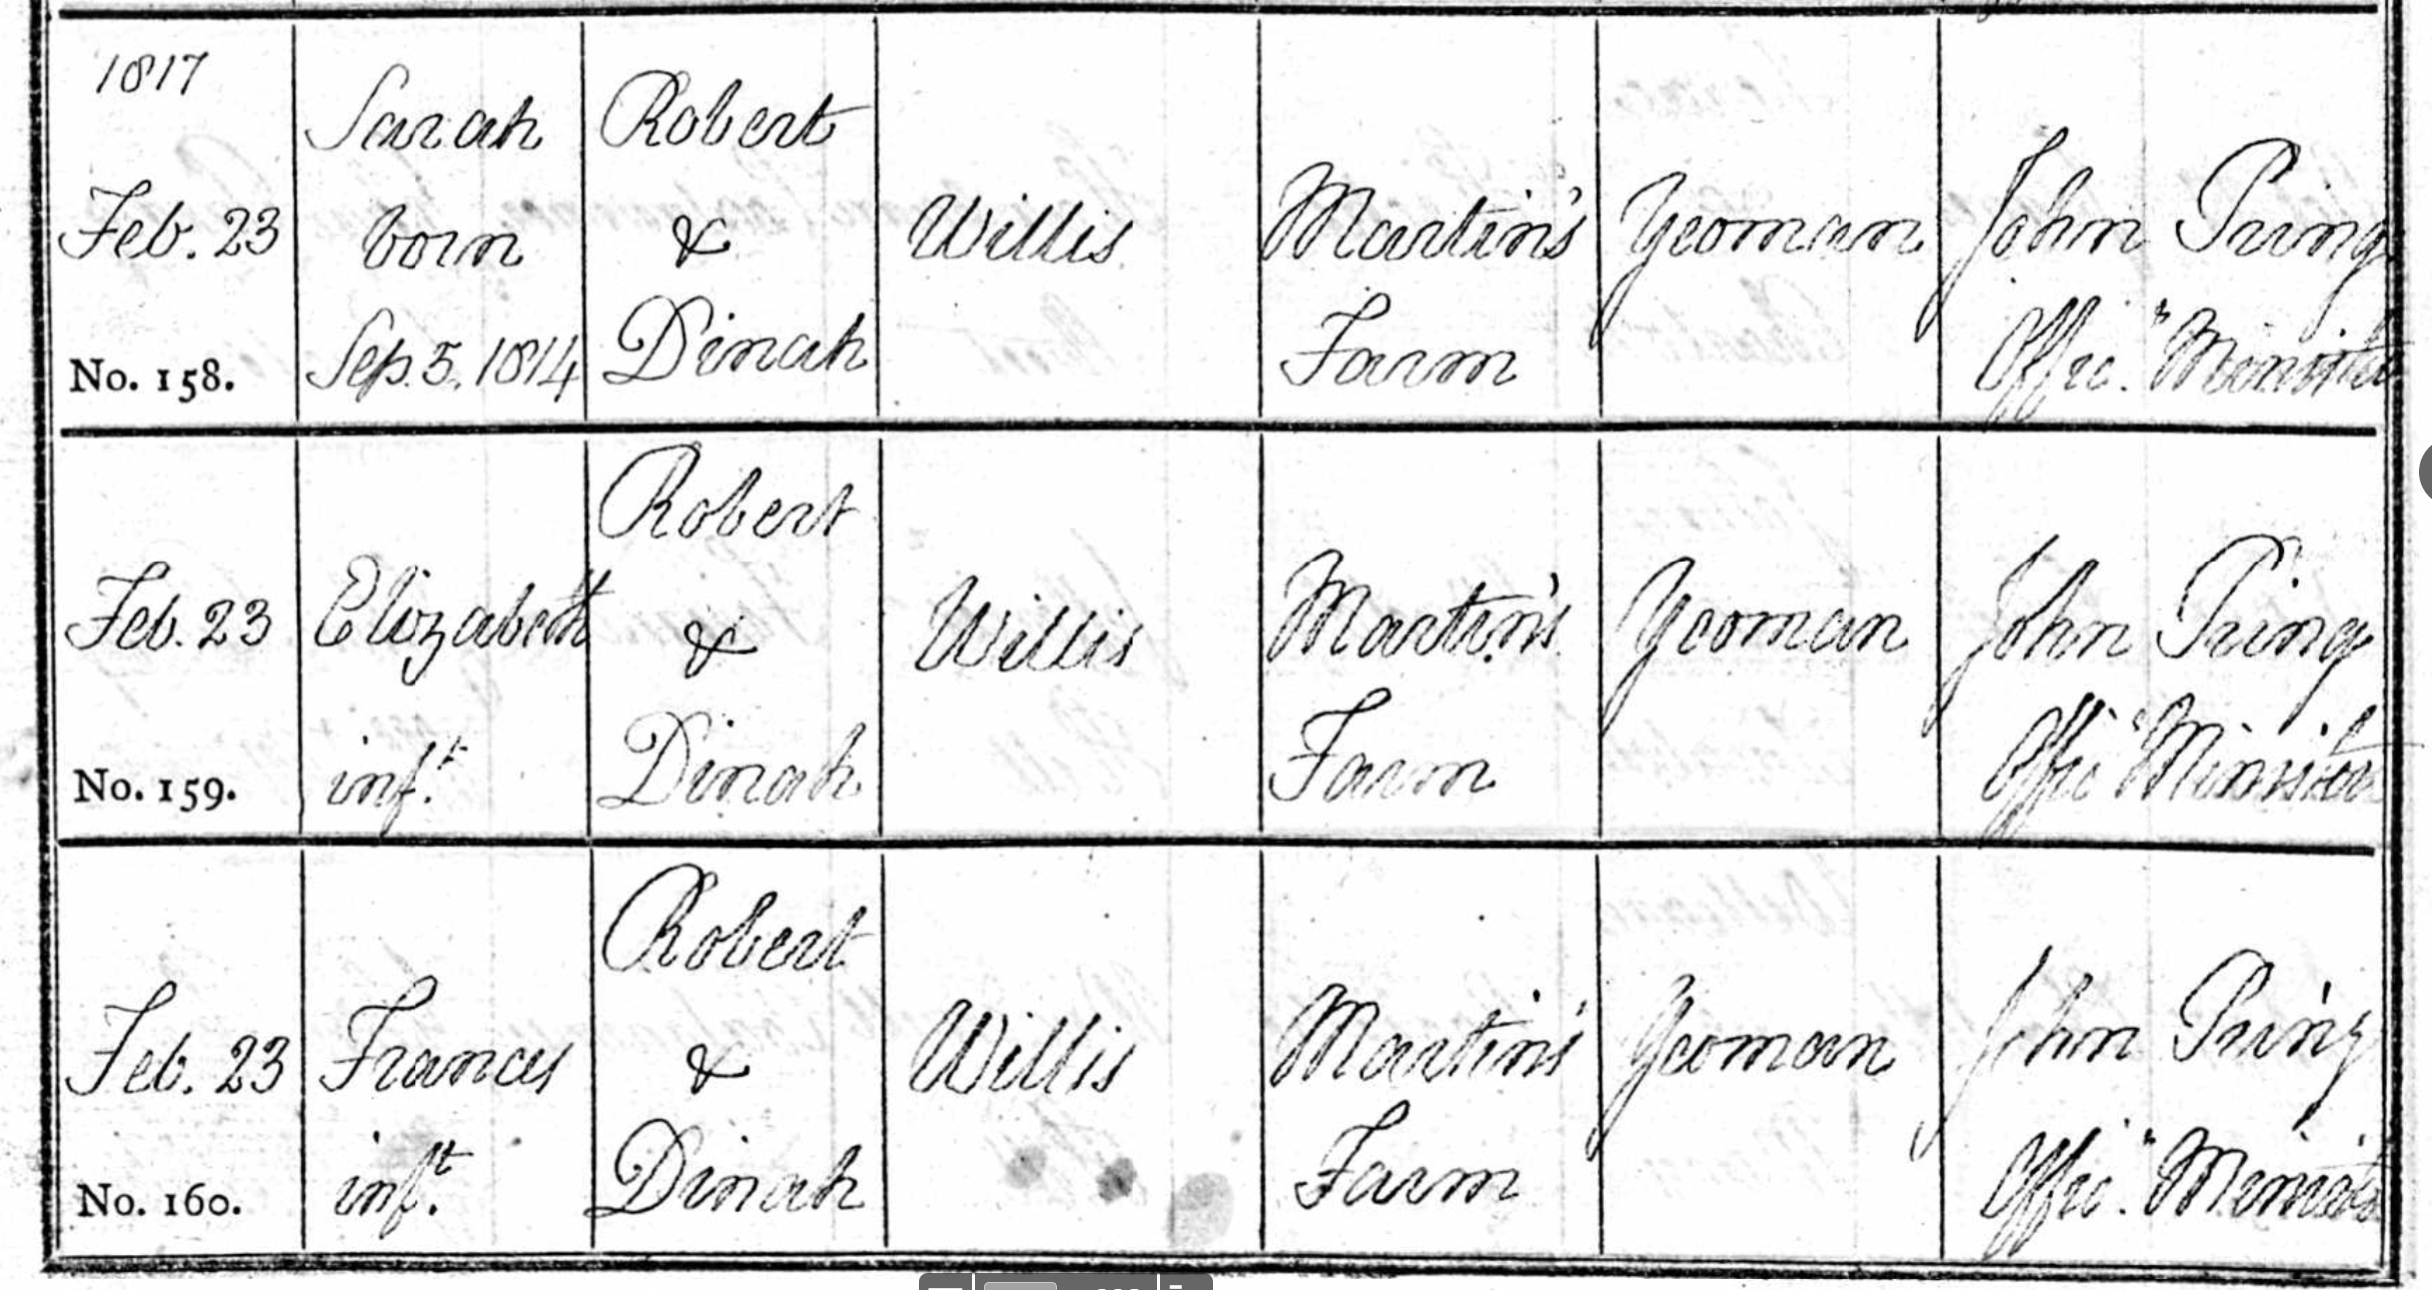 Figure 2: Baptism Register Entry for Sarah, Elizabeth and Frances Willis